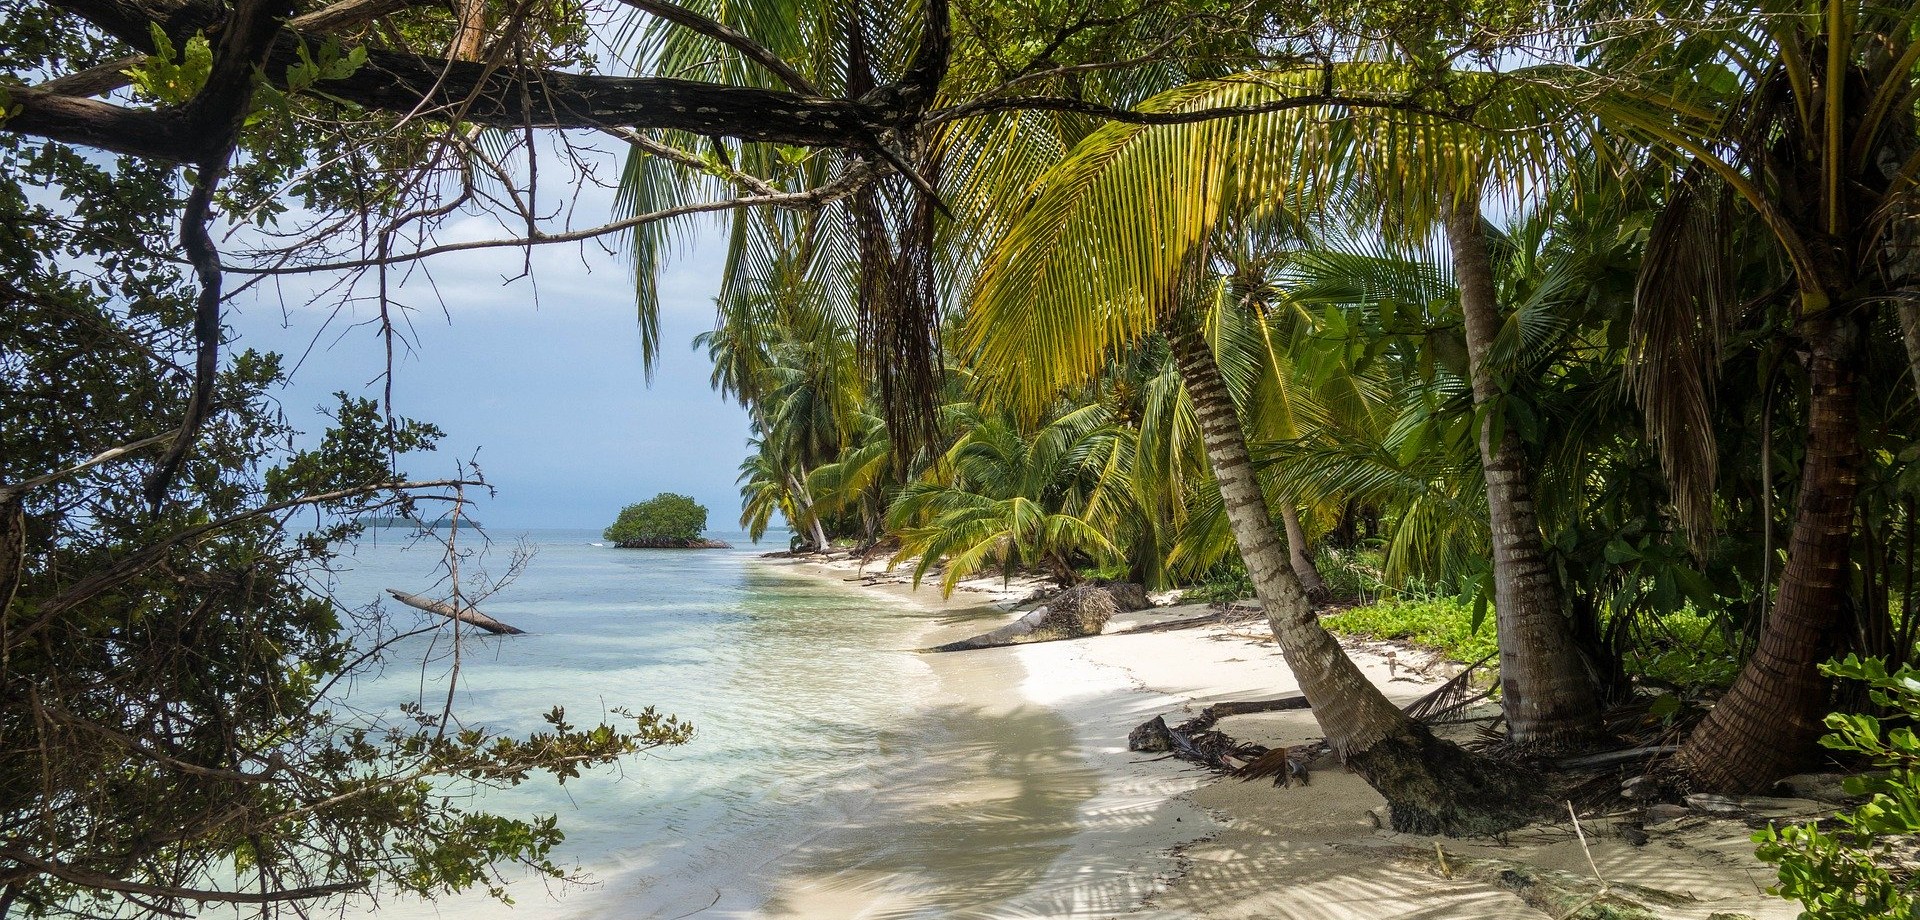 Ein tropischer Strandabschnitt, bestehend aus ganz vielen Palmen, Sträuchern, Farnen, weißem Sand und klarem Wasser